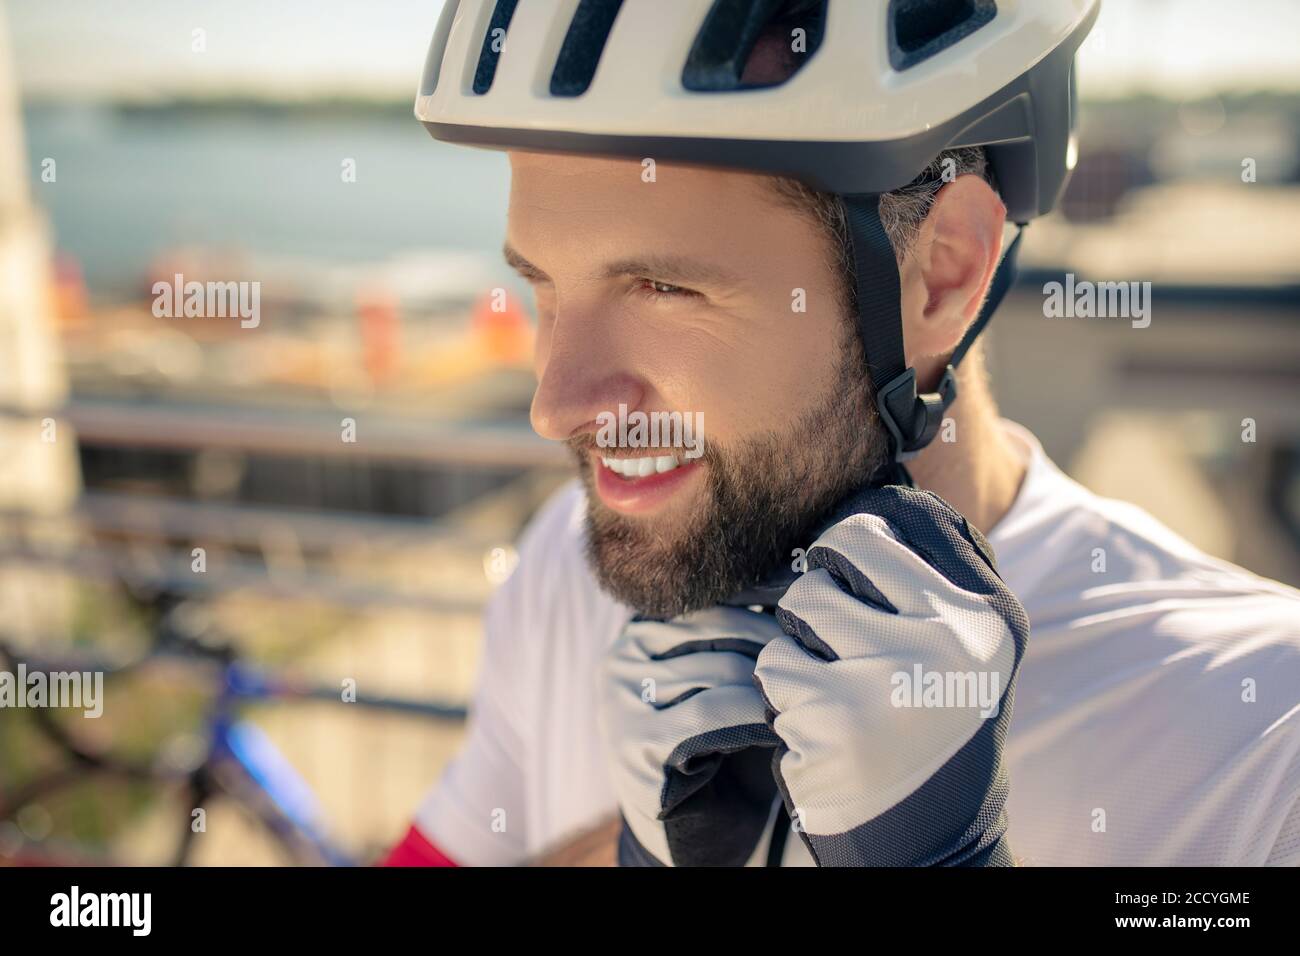 Gros plan de la tête de l'homme dans un casque de vélo Banque D'Images